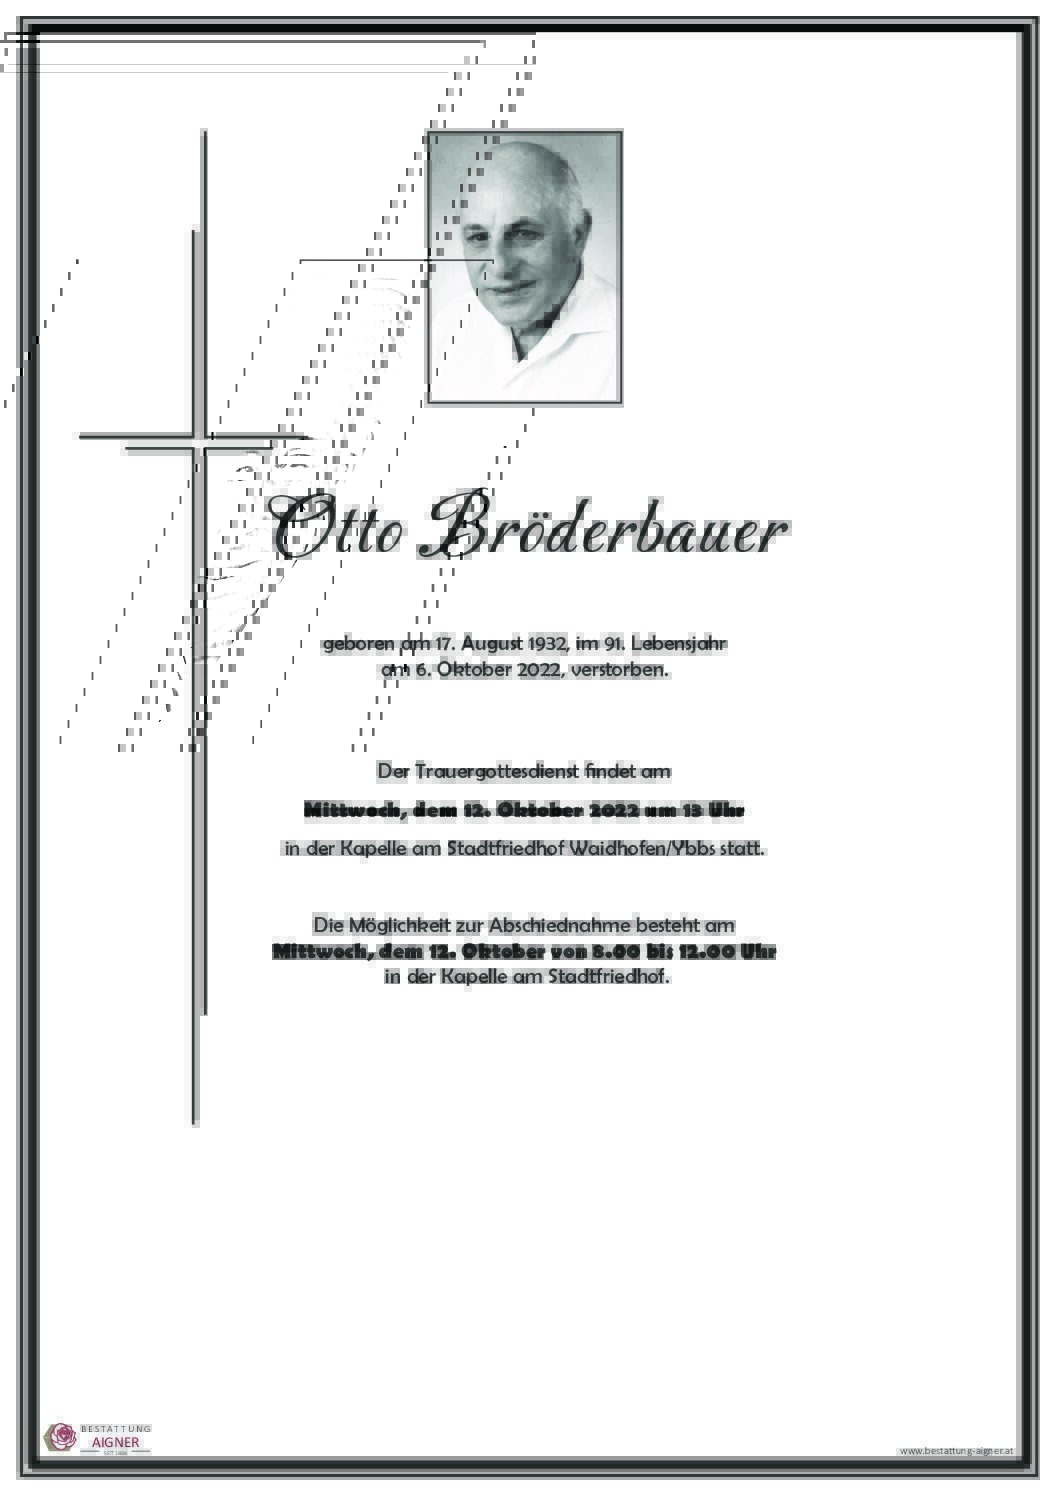 Otto Bröderbauer